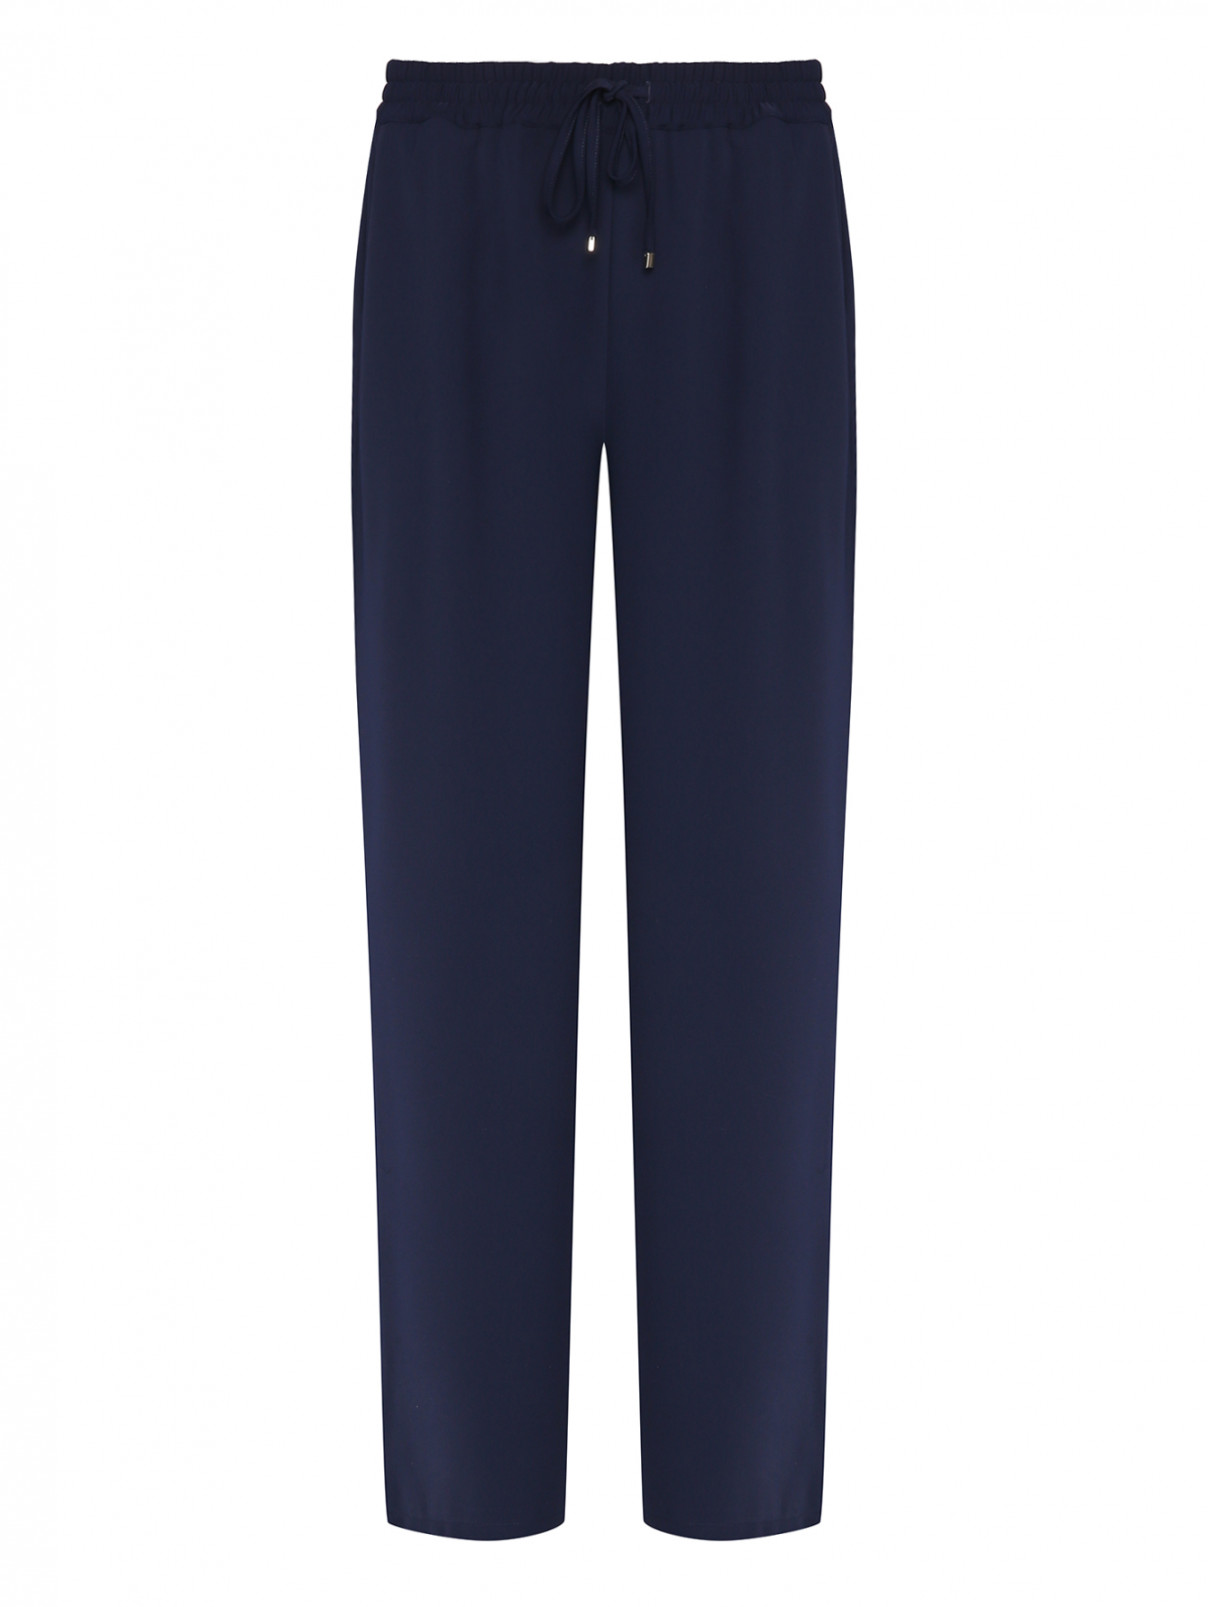 Однотонные брюки на резинке Luisa Spagnoli  –  Общий вид  – Цвет:  Синий